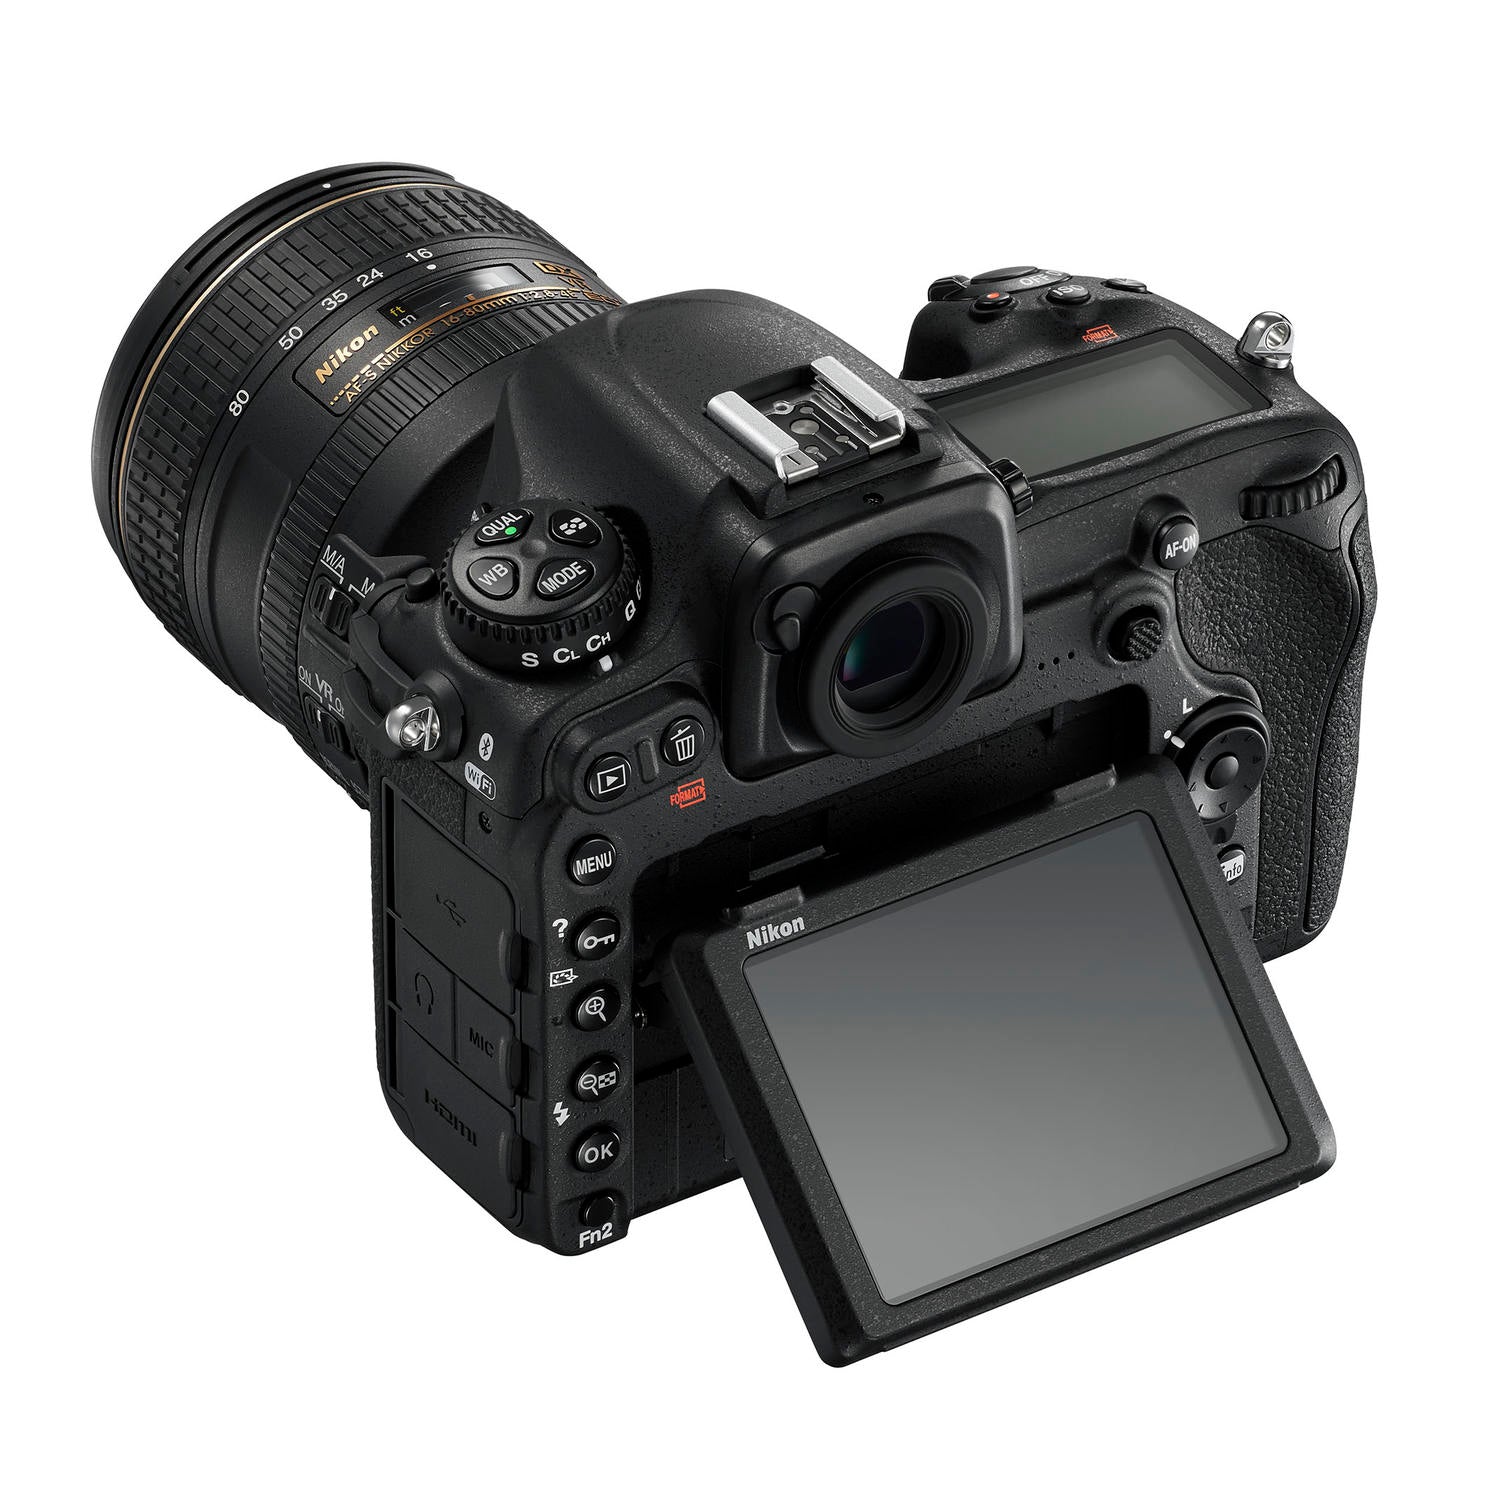 Nikon D500 Digital SLR Camera With 16-80mm VR Lens, Black